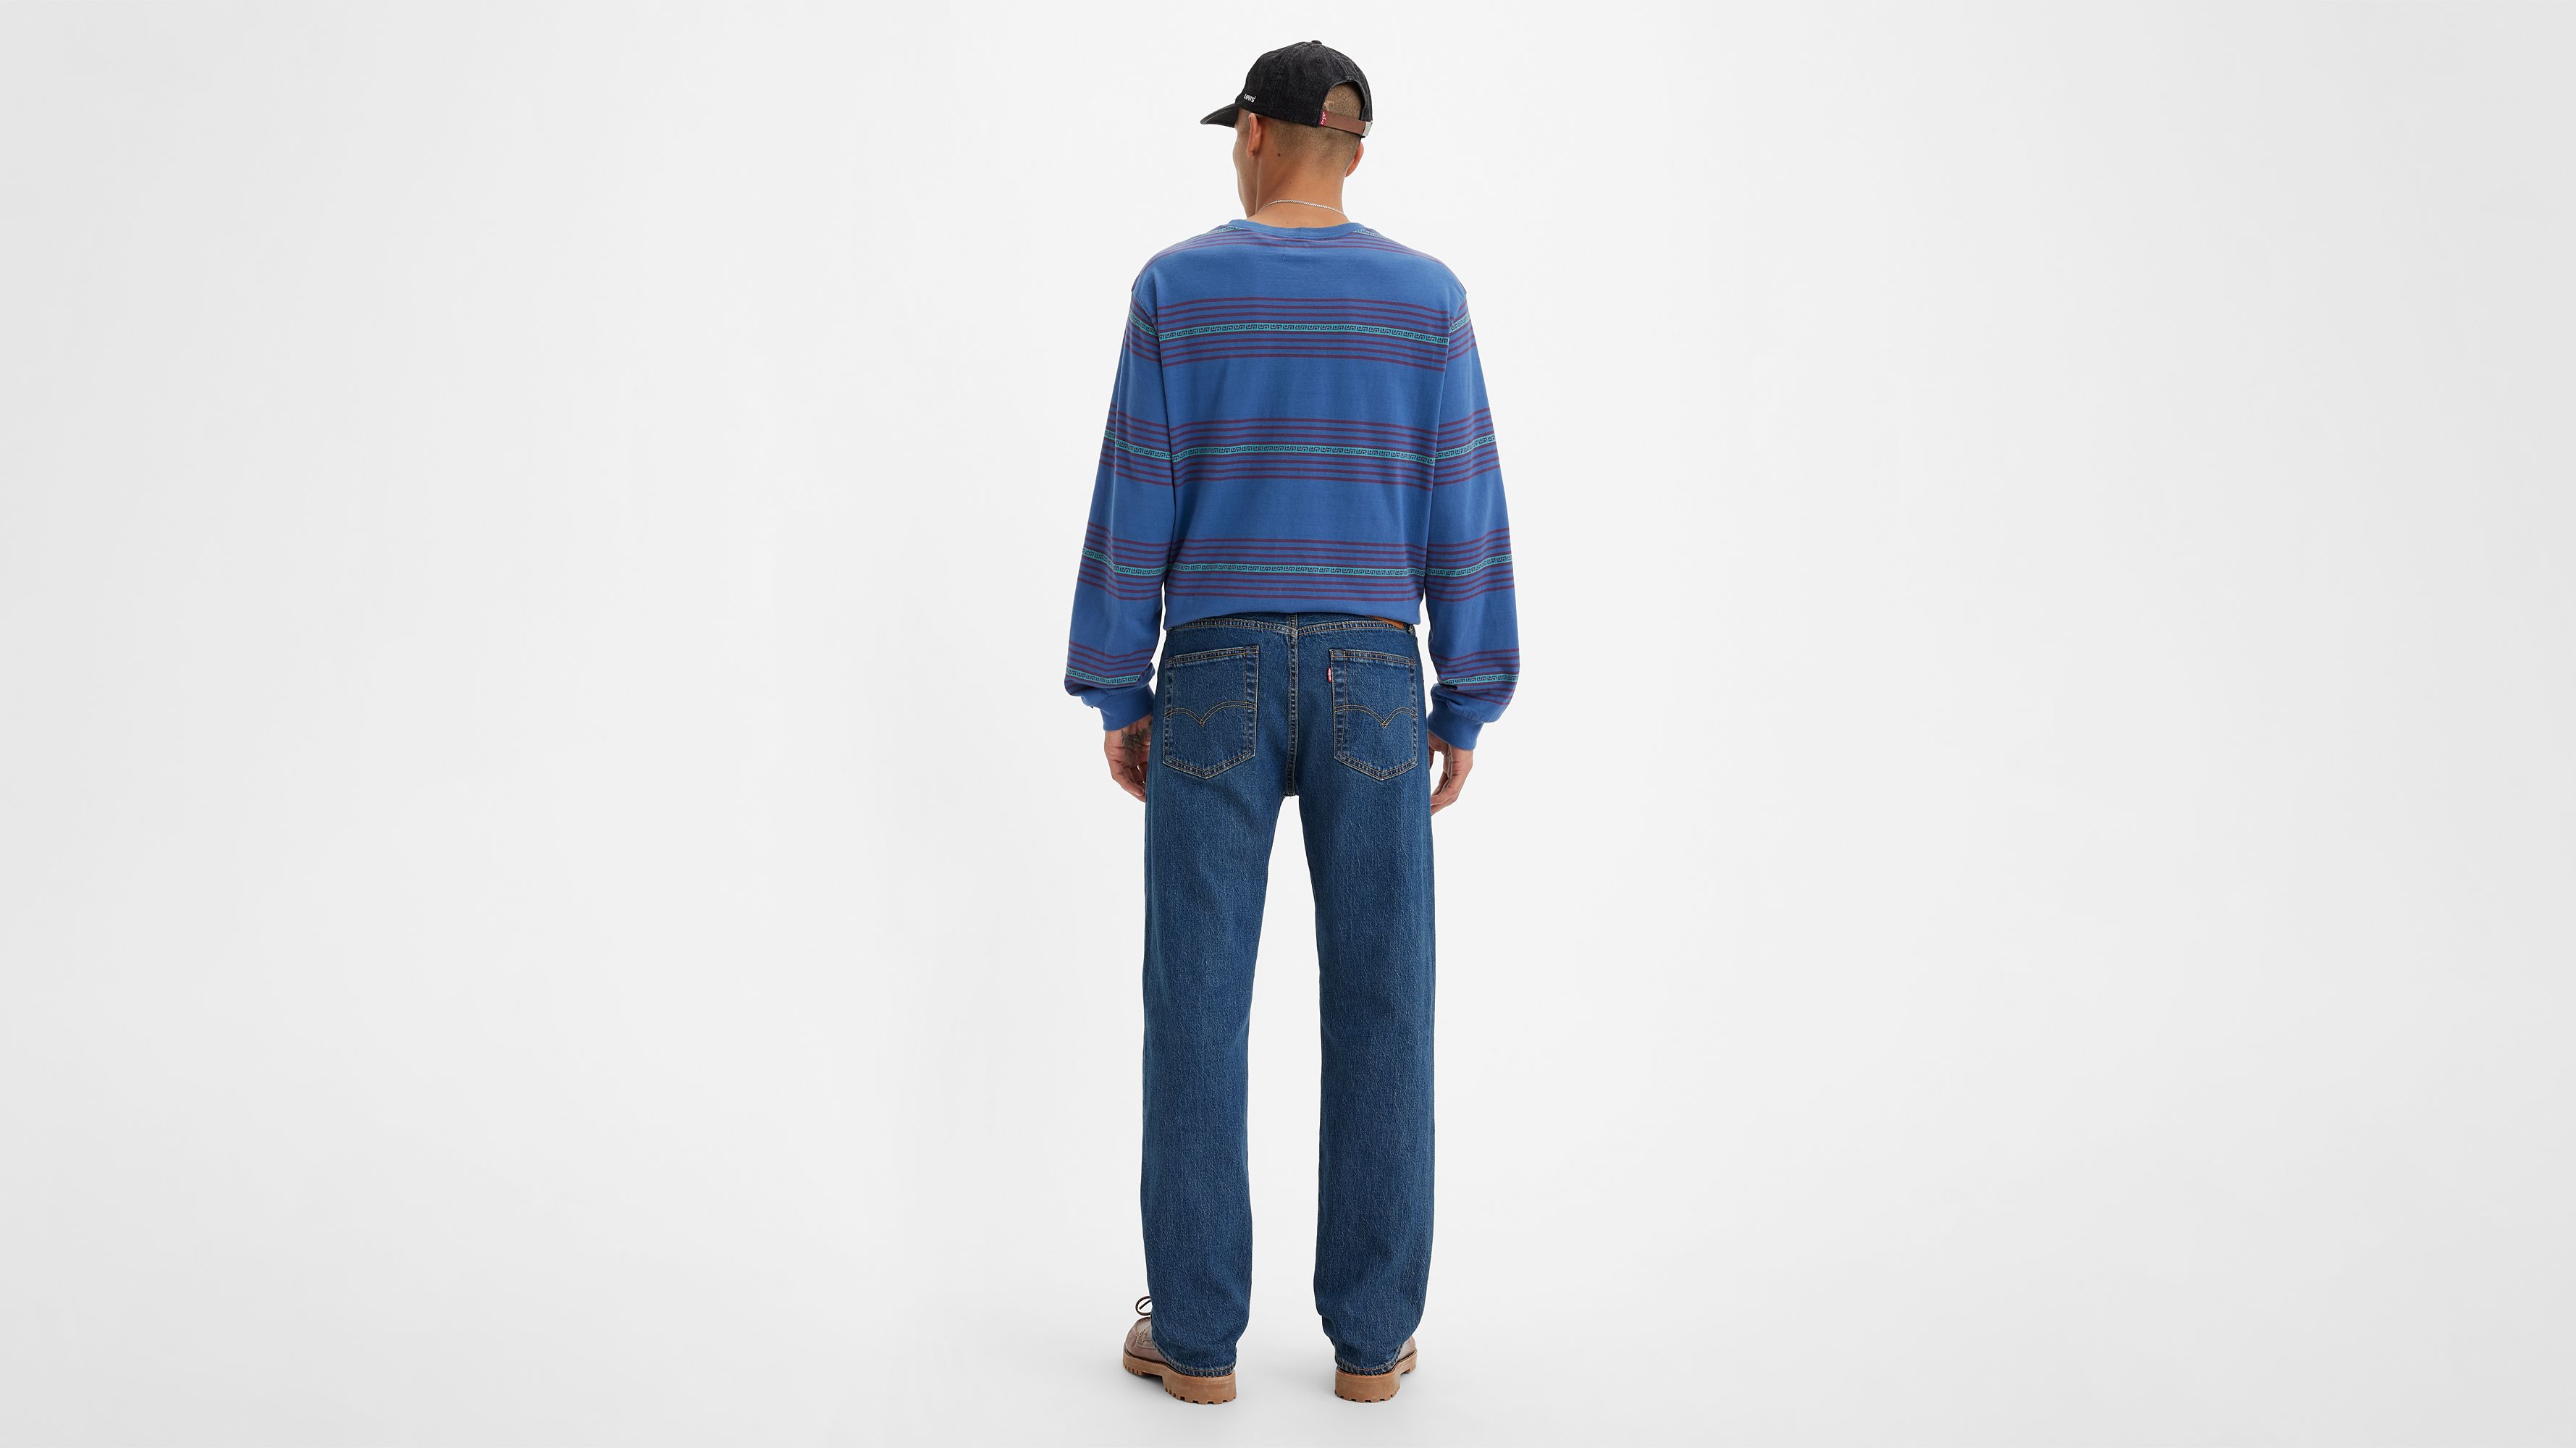 levis jeans shrink after wash